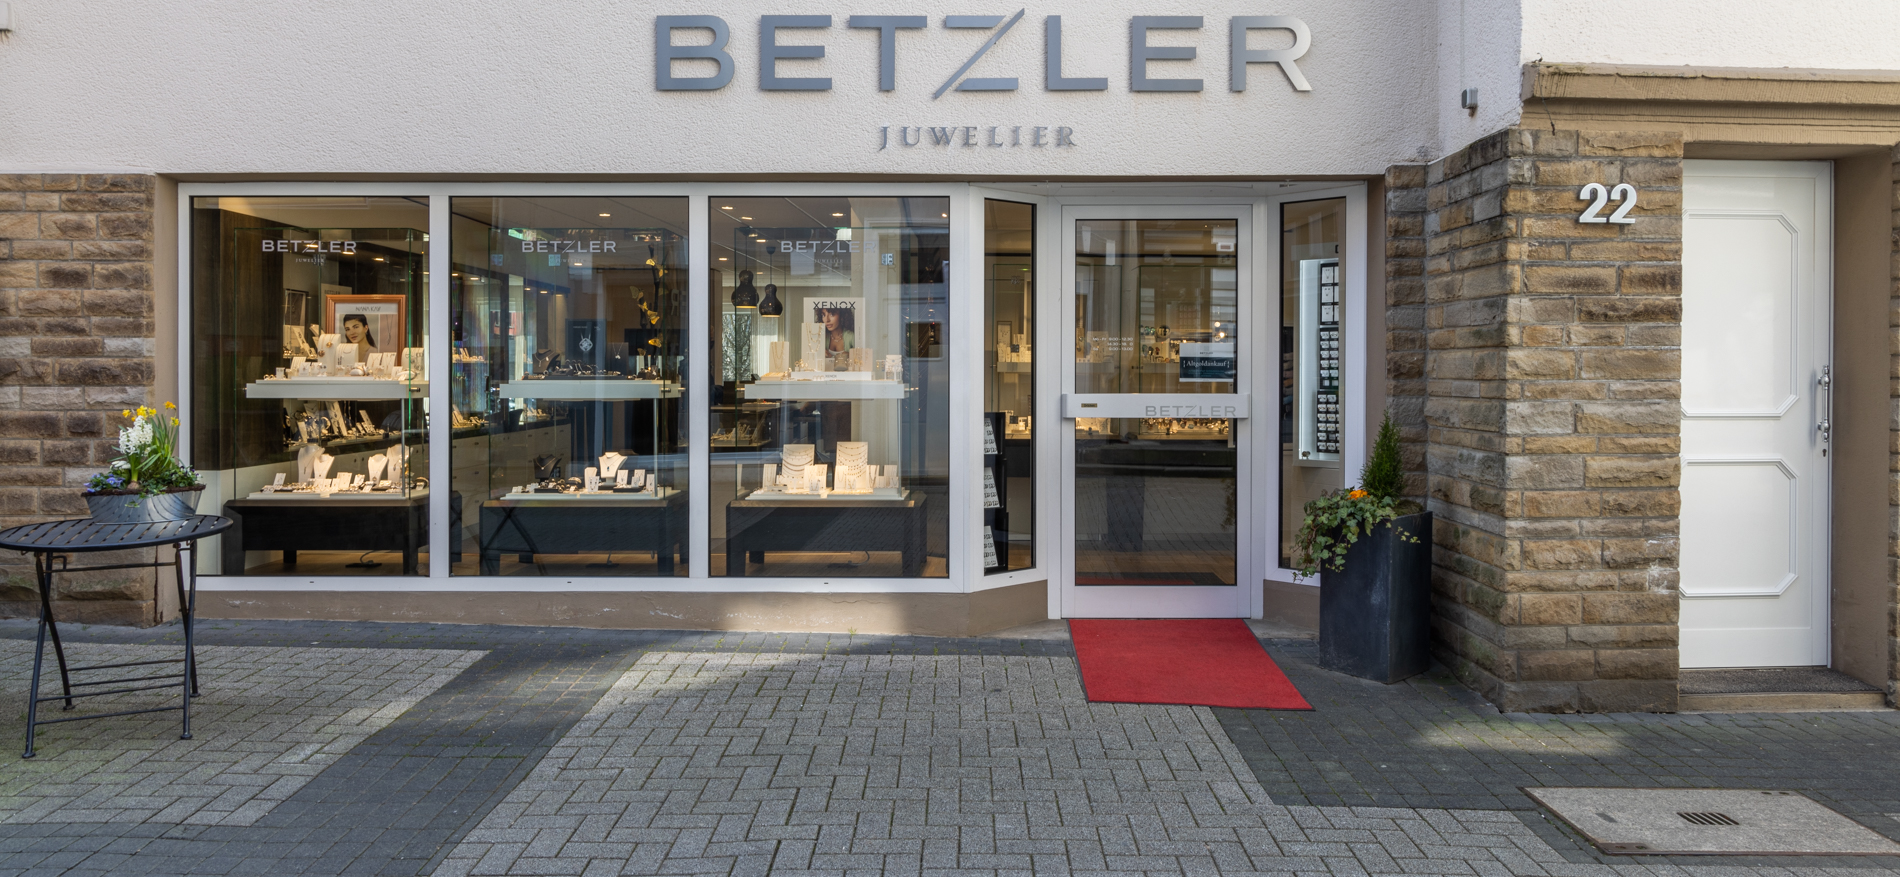 Juwelier Betzler | Altena (DE) - 